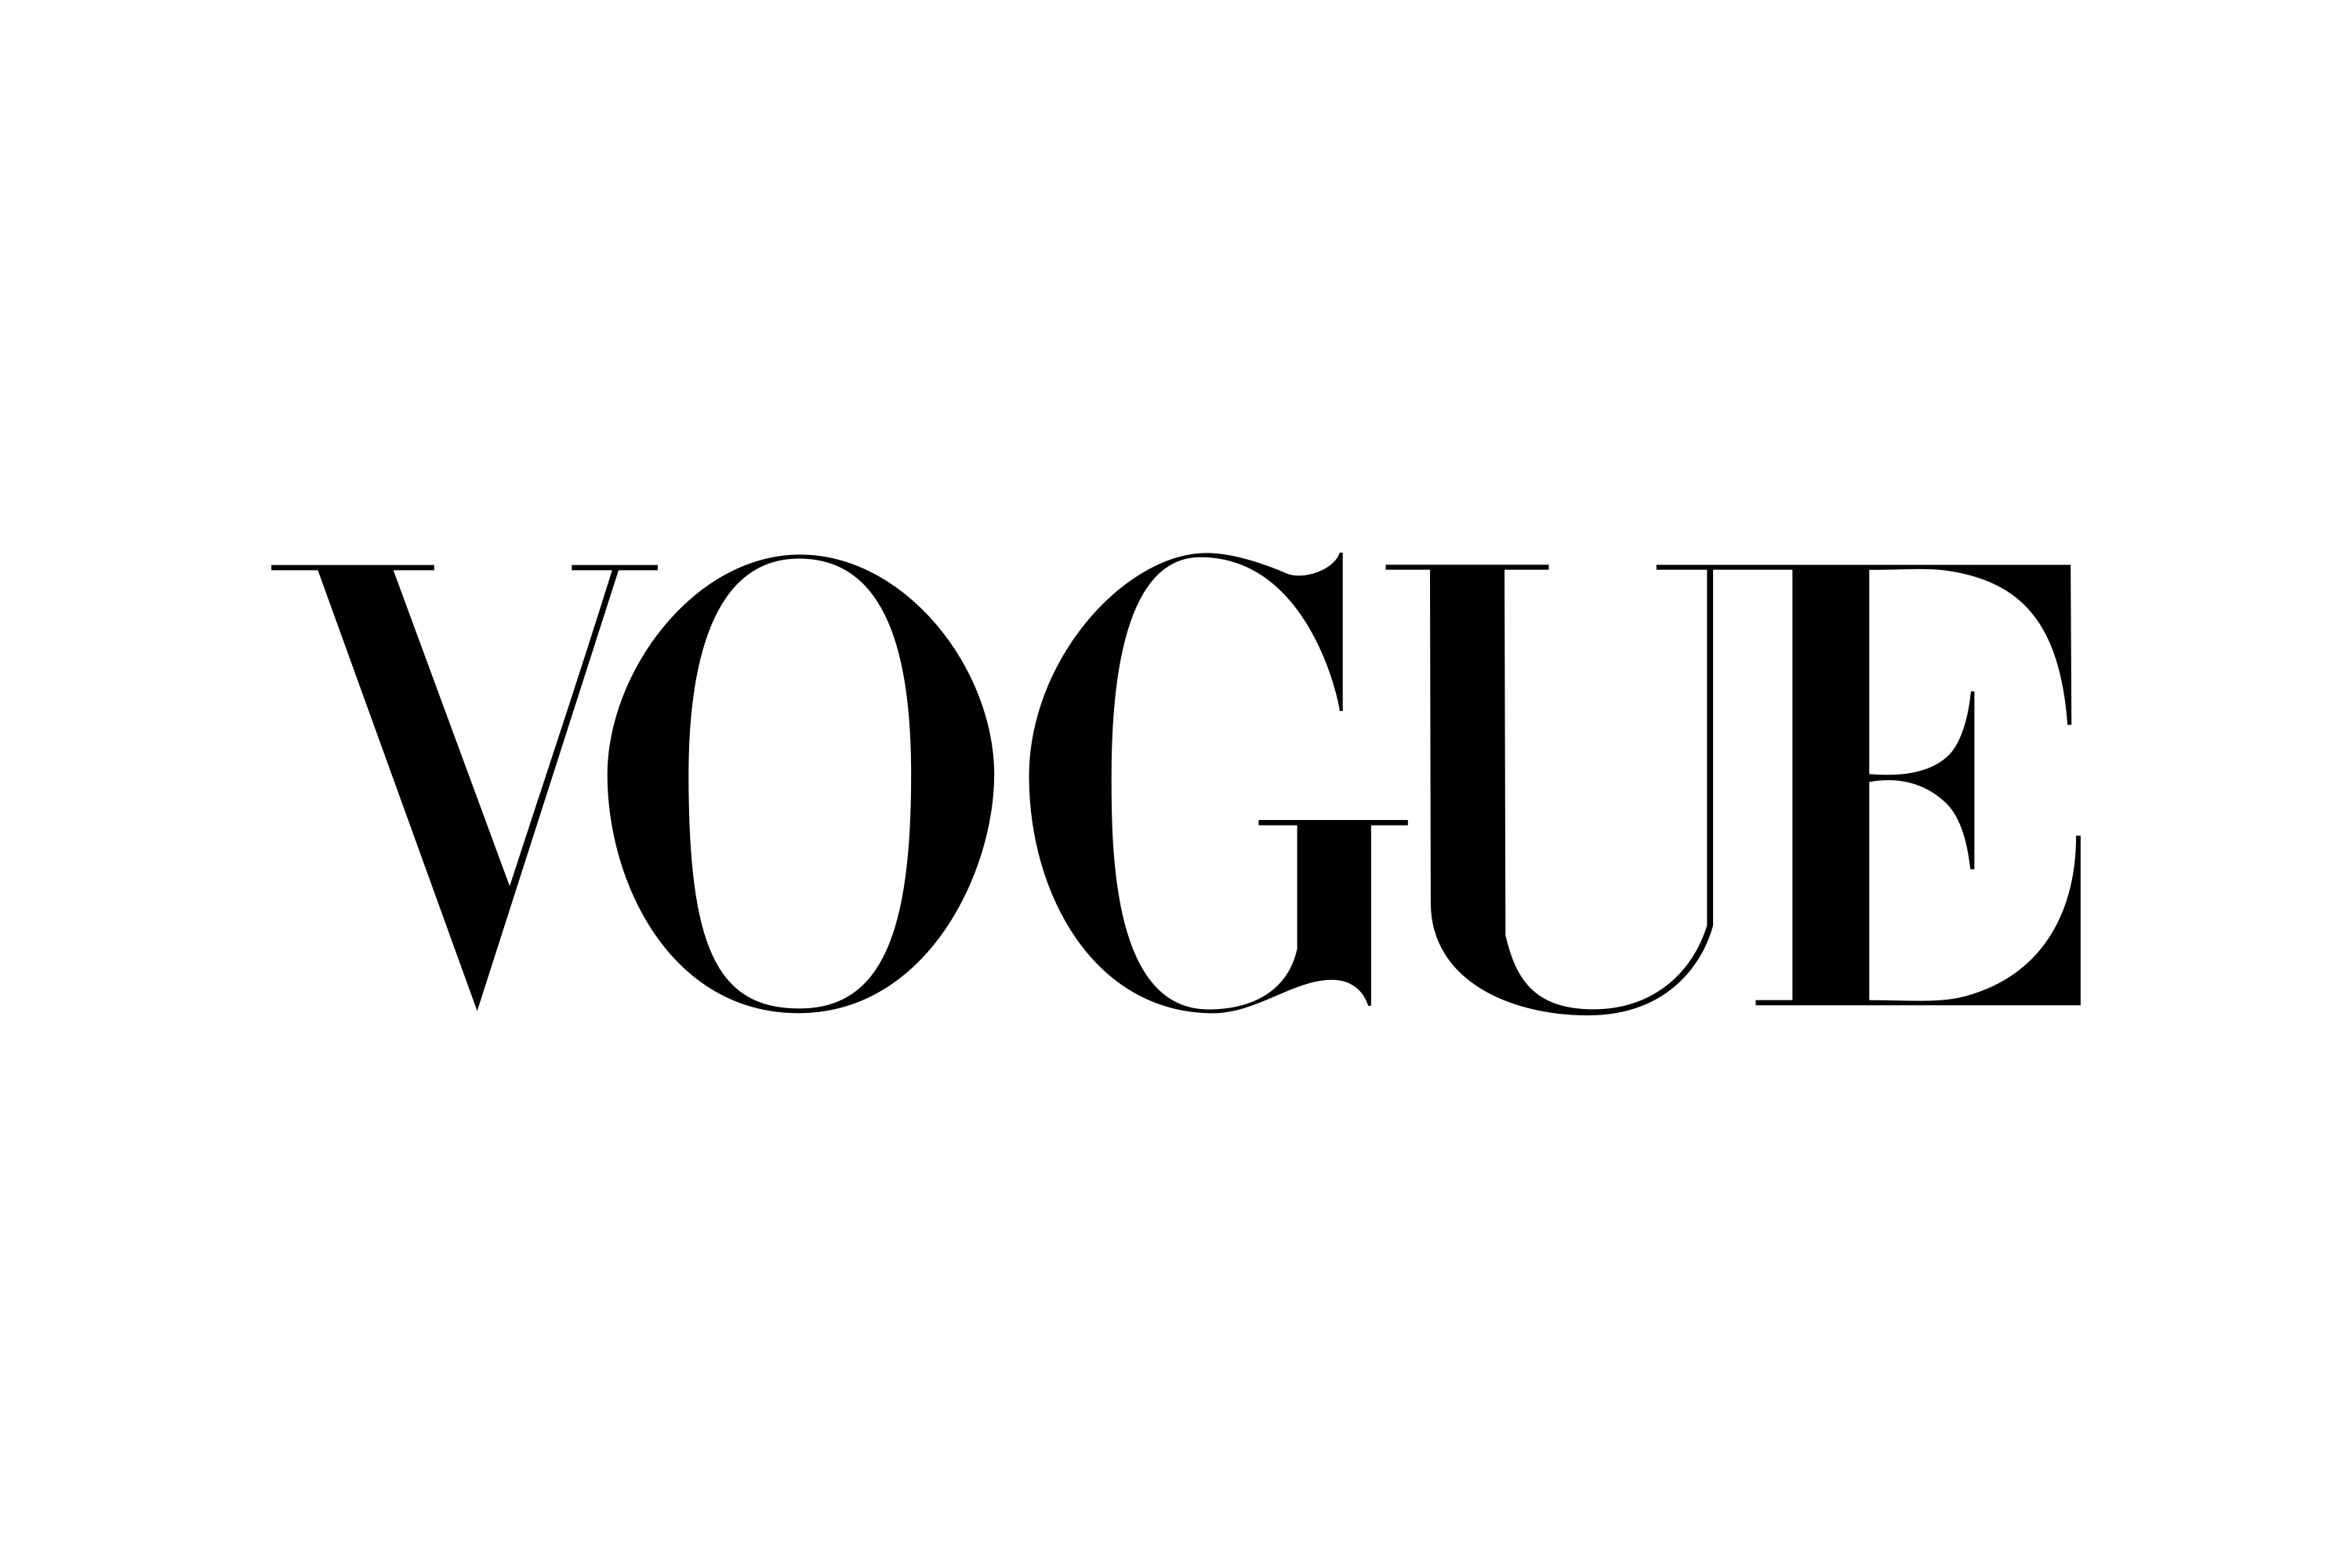 Download Vogue Logo in SVG Vector or PNG File Format - Logo.wine